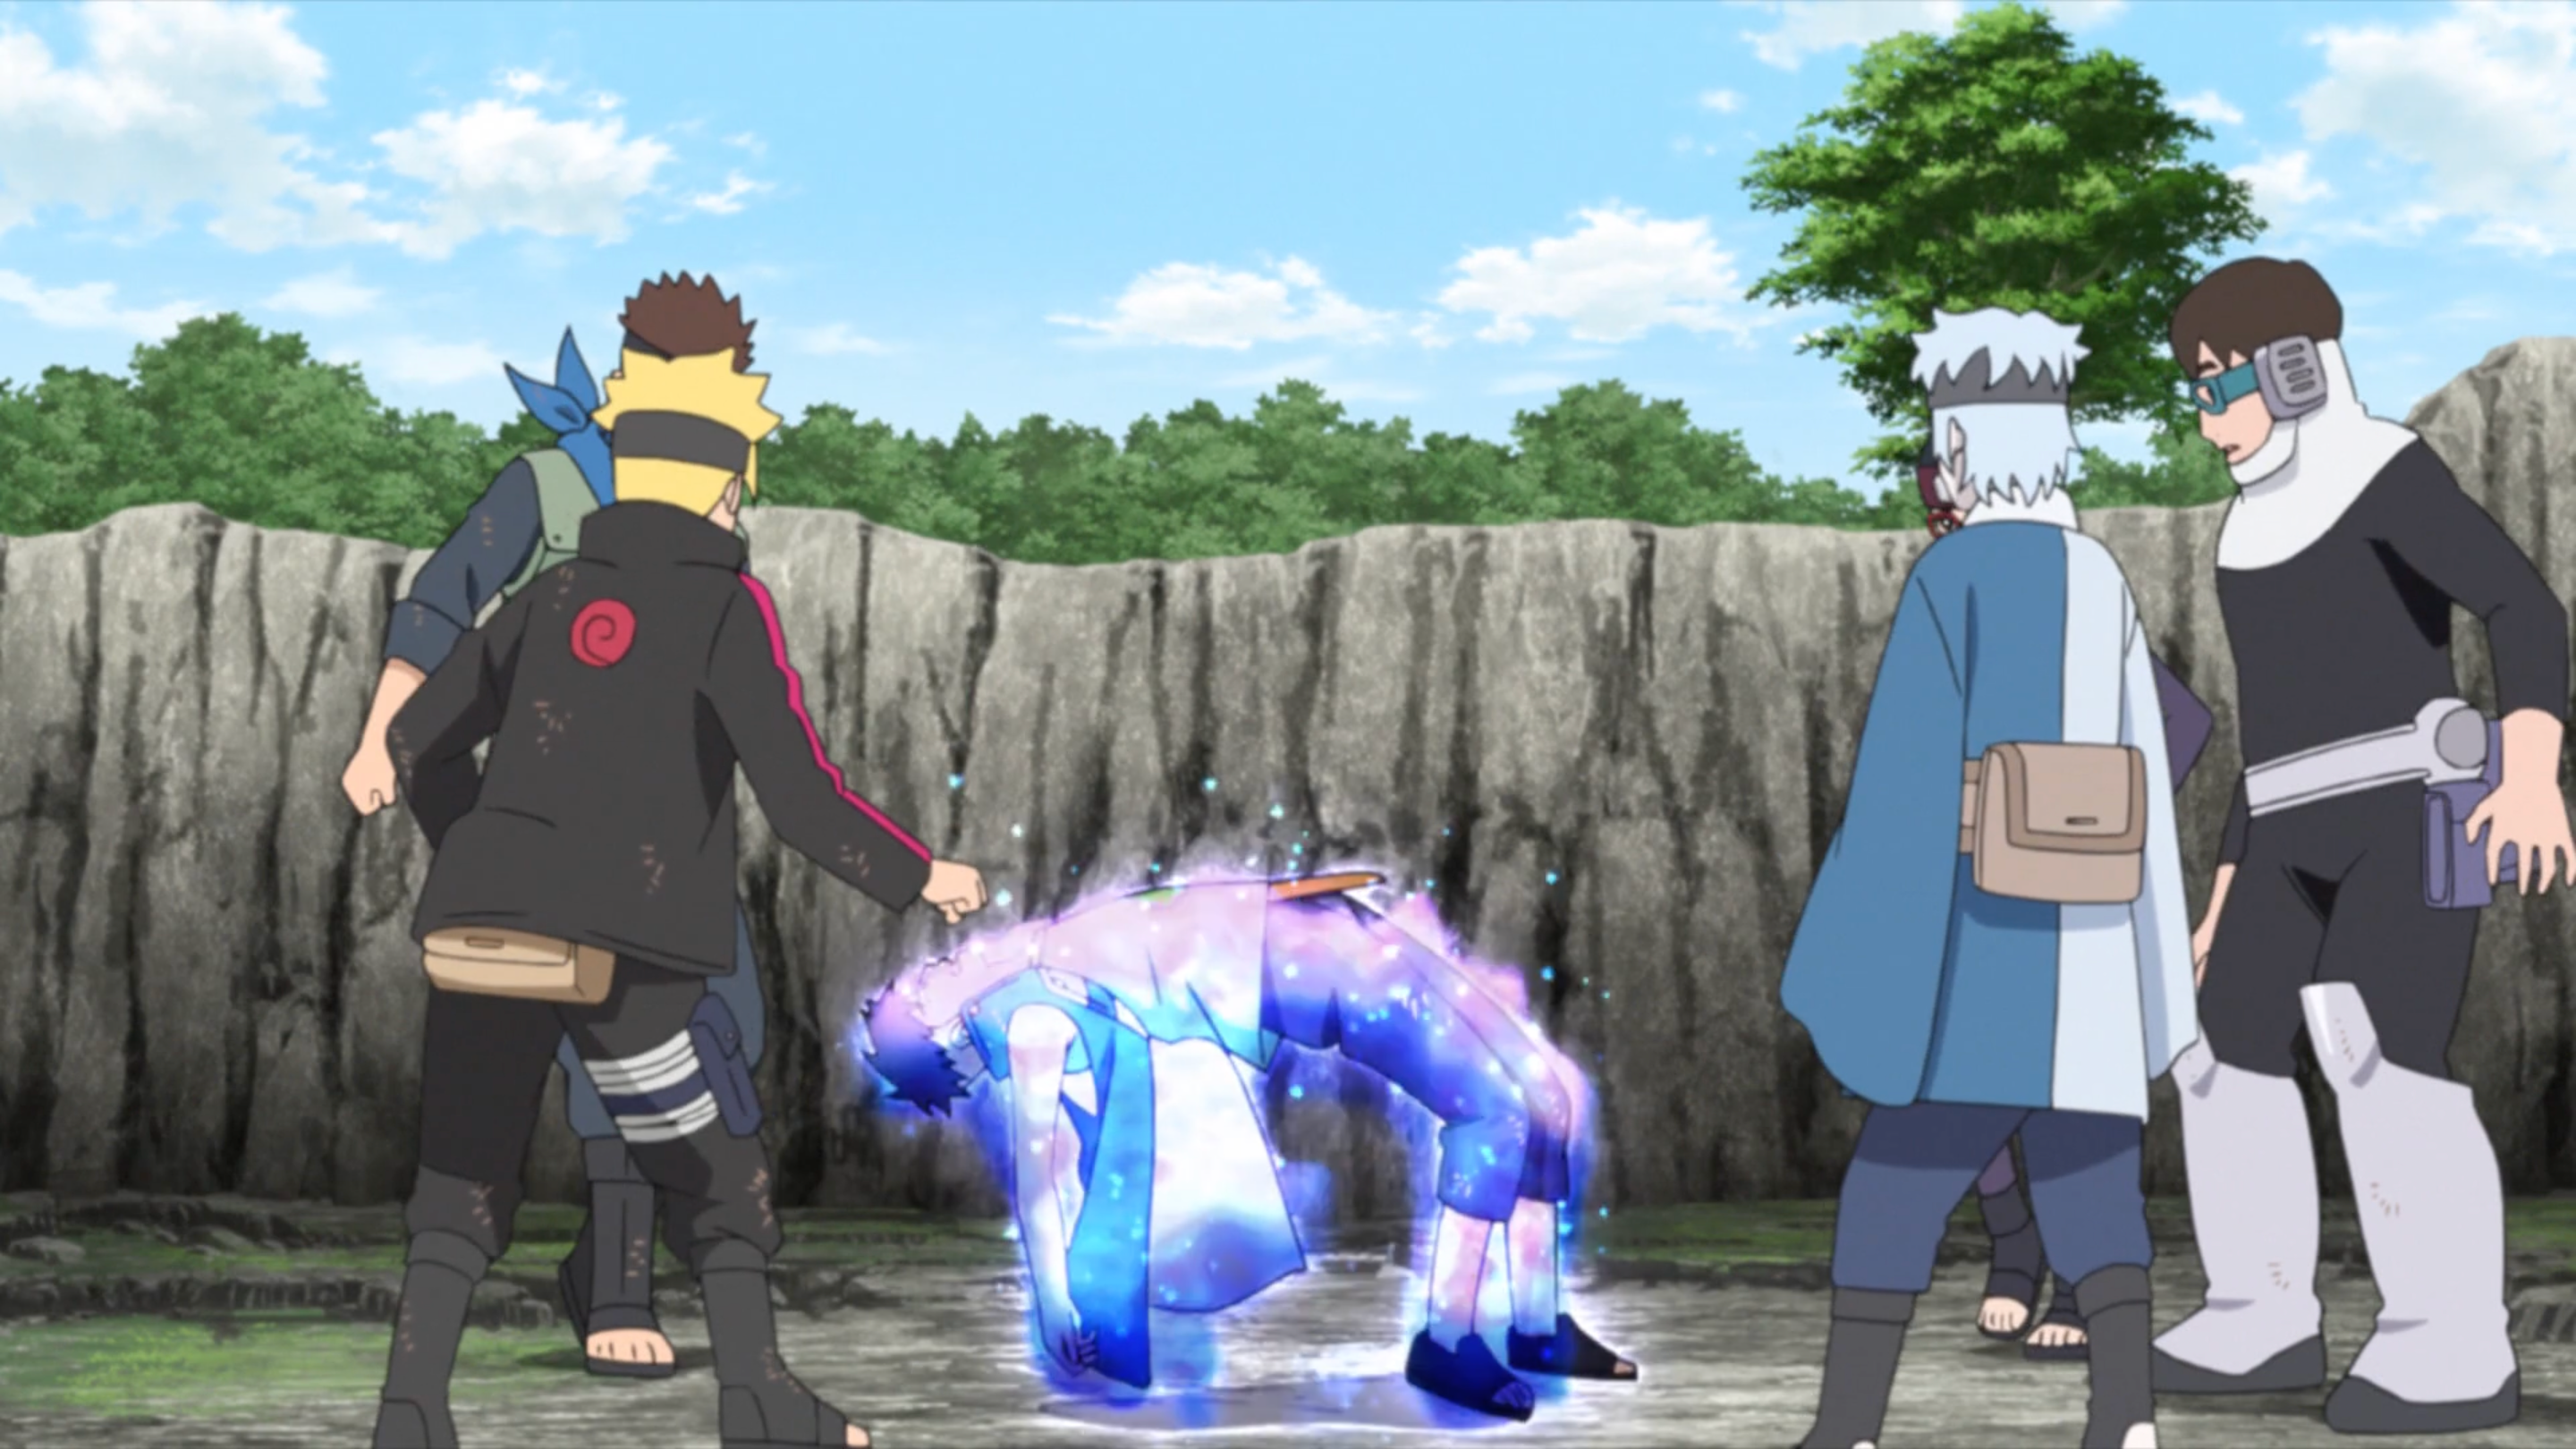 Boruto episode 220 explained: Was Naruto about to kill Boruto with his  Rasengan?